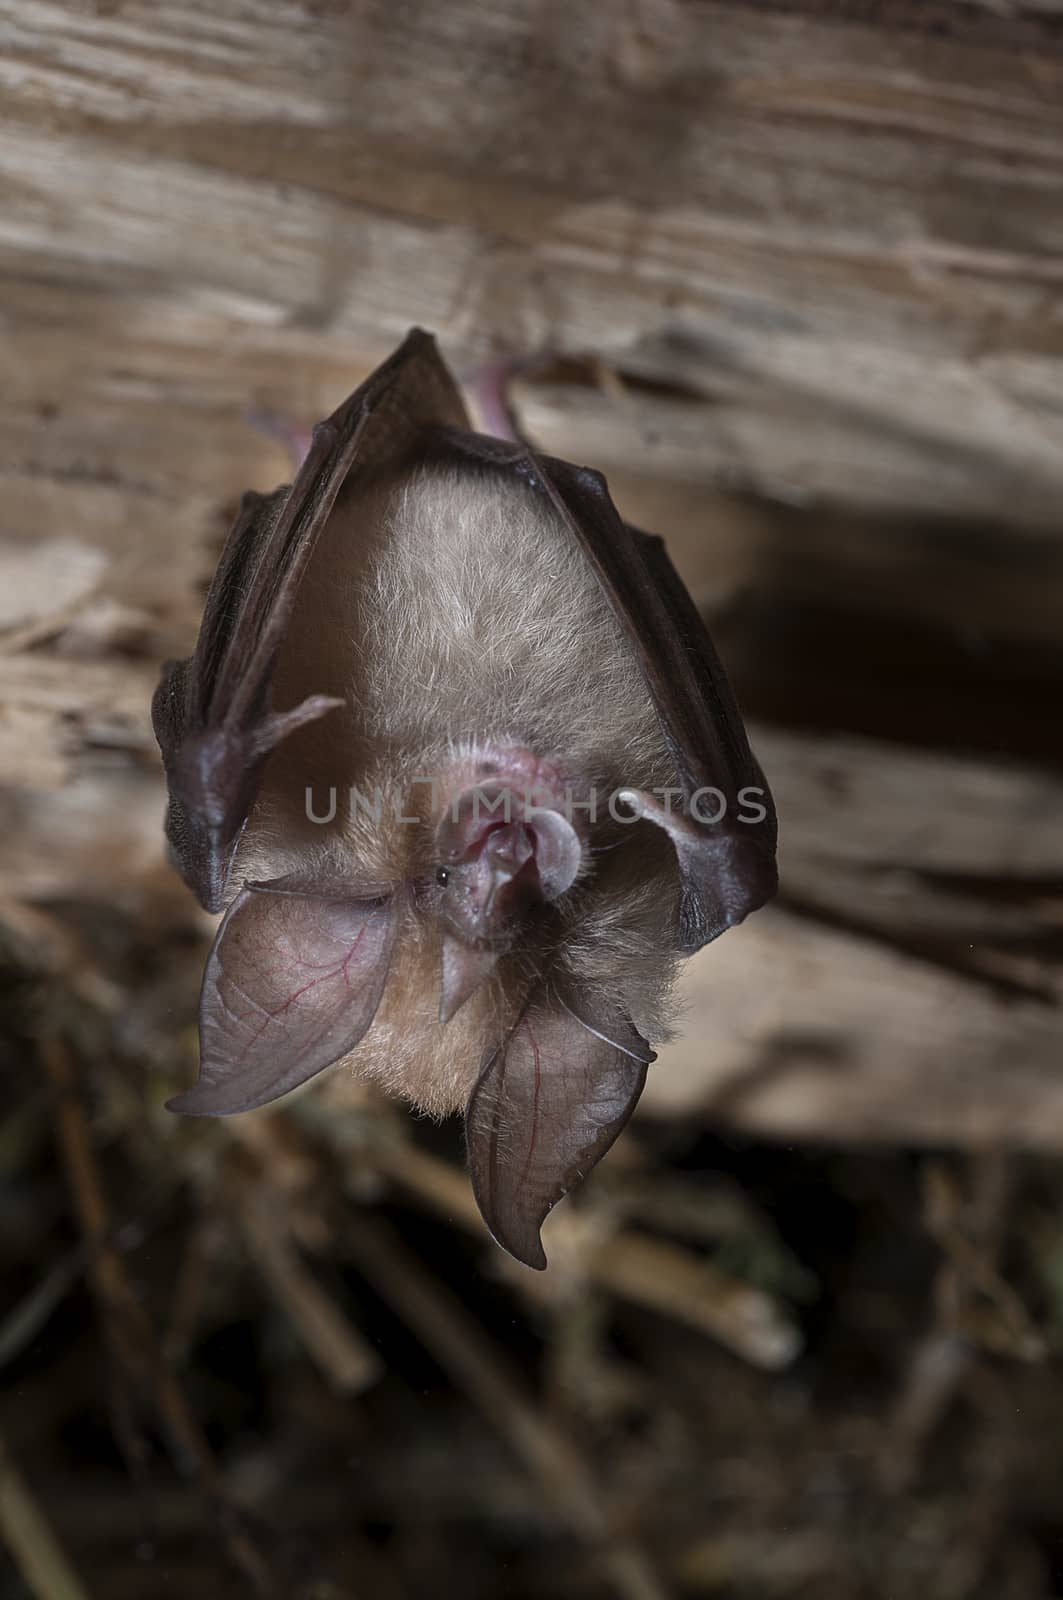 Lesser horseshoe bat (Rhinolophus hipposideros), hanging, sleepi by jalonsohu@gmail.com